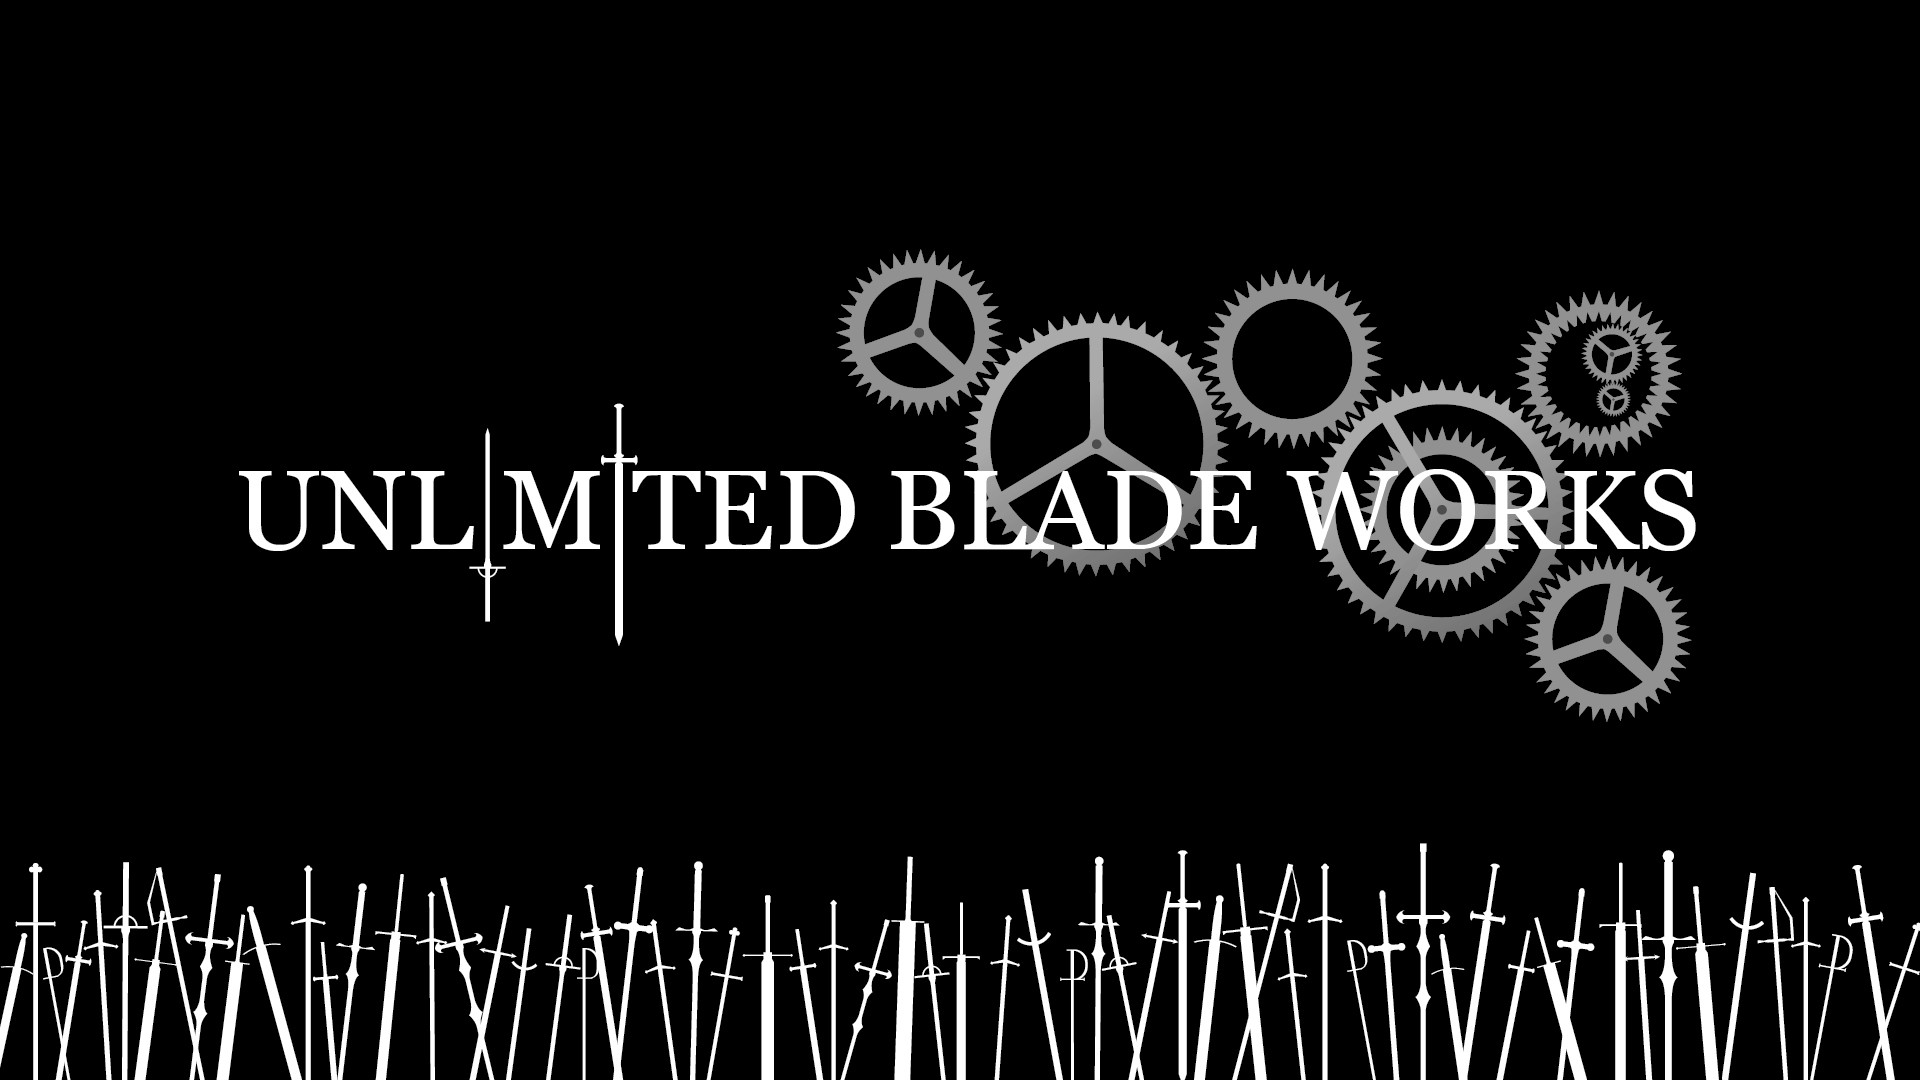 KurogamiAnnaahl Unlimited Blade Works Sihouette Ver. by KurogamiAnnaahl